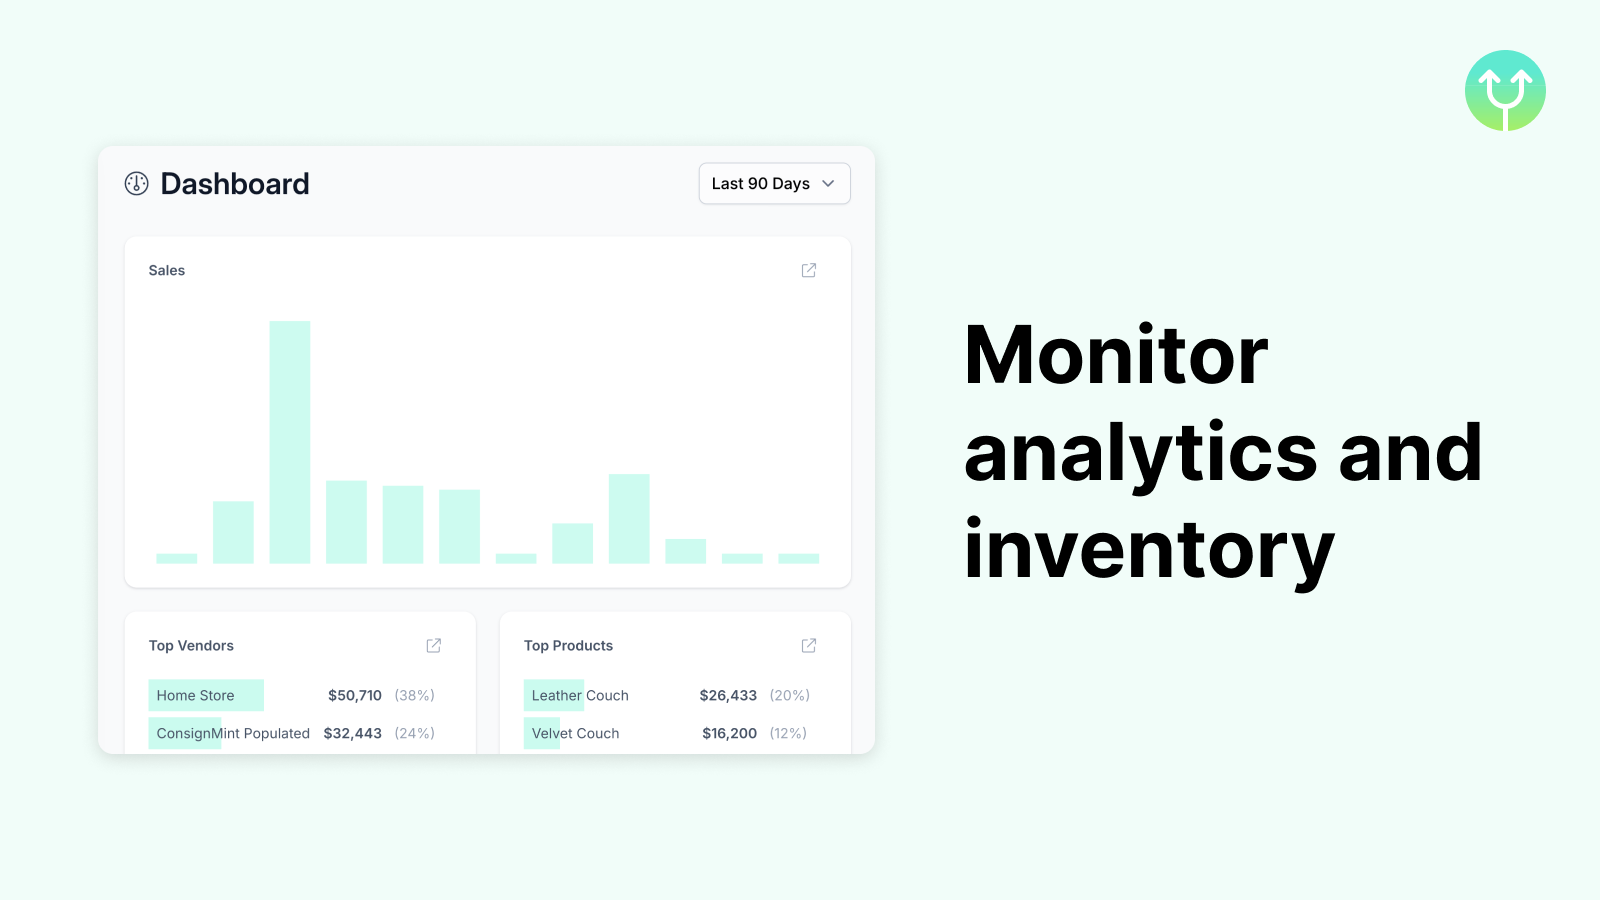 Monitore análises e inventário com os relatórios do ConsignMint